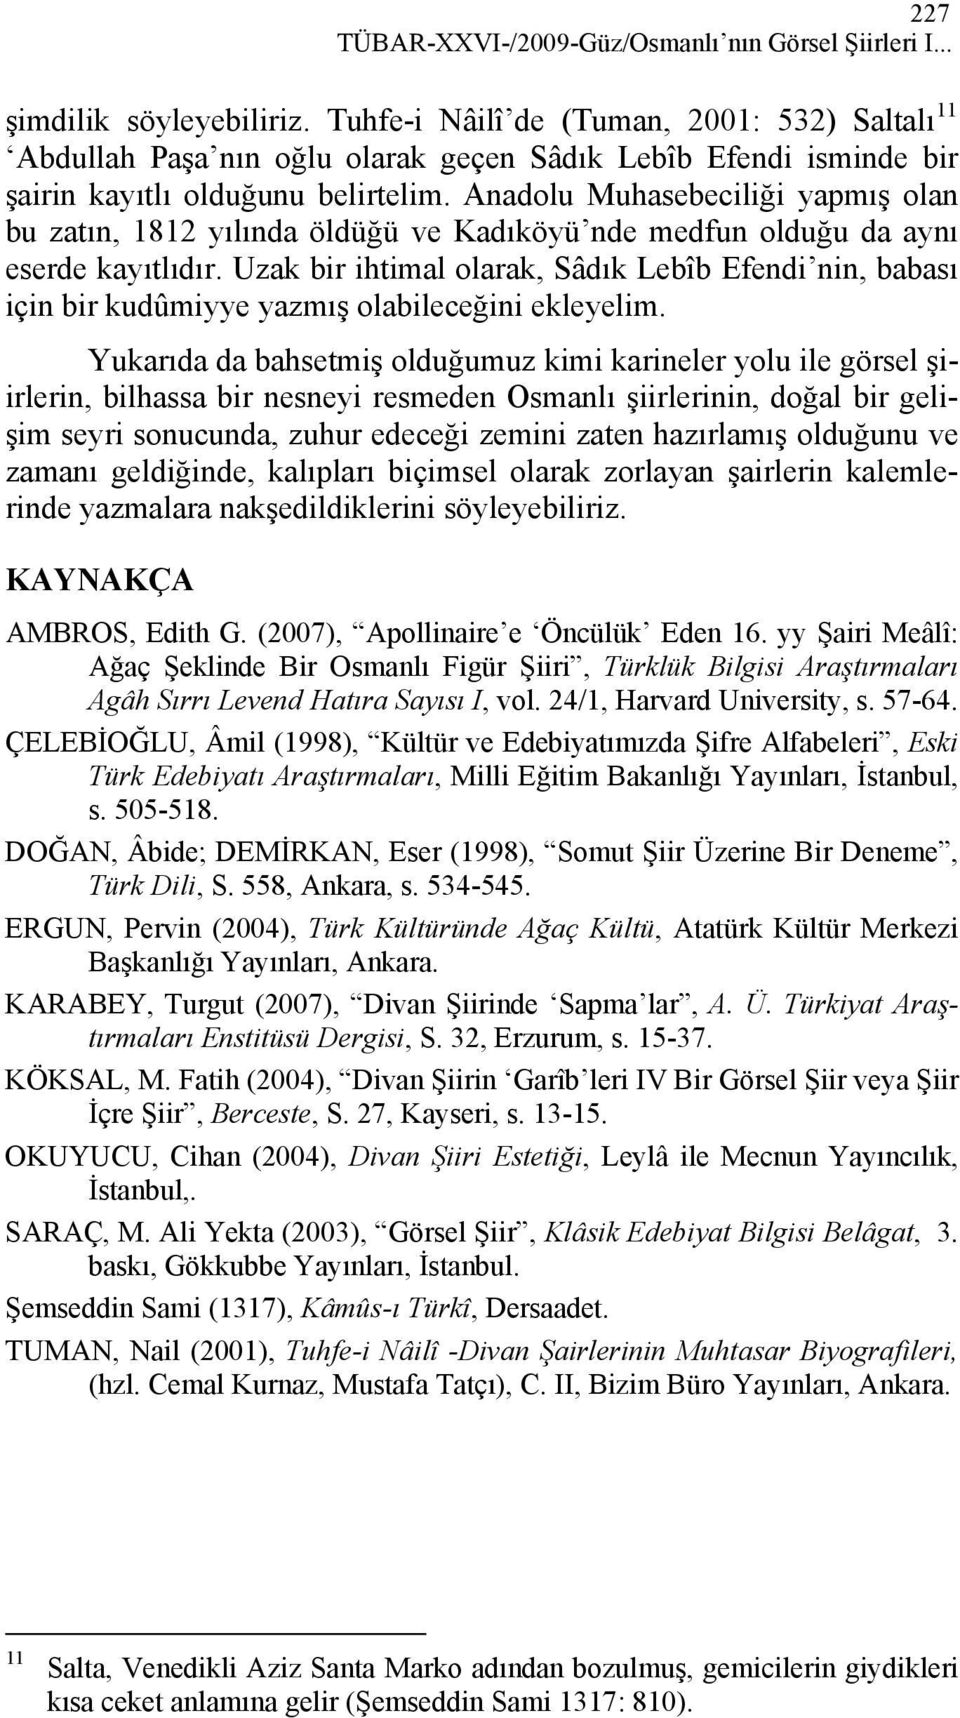 Anadolu Muhasebeciliği yapmış olan bu zatın, 1812 yılında öldüğü ve Kadıköyü nde medfun olduğu da aynı eserde kayıtlıdır.